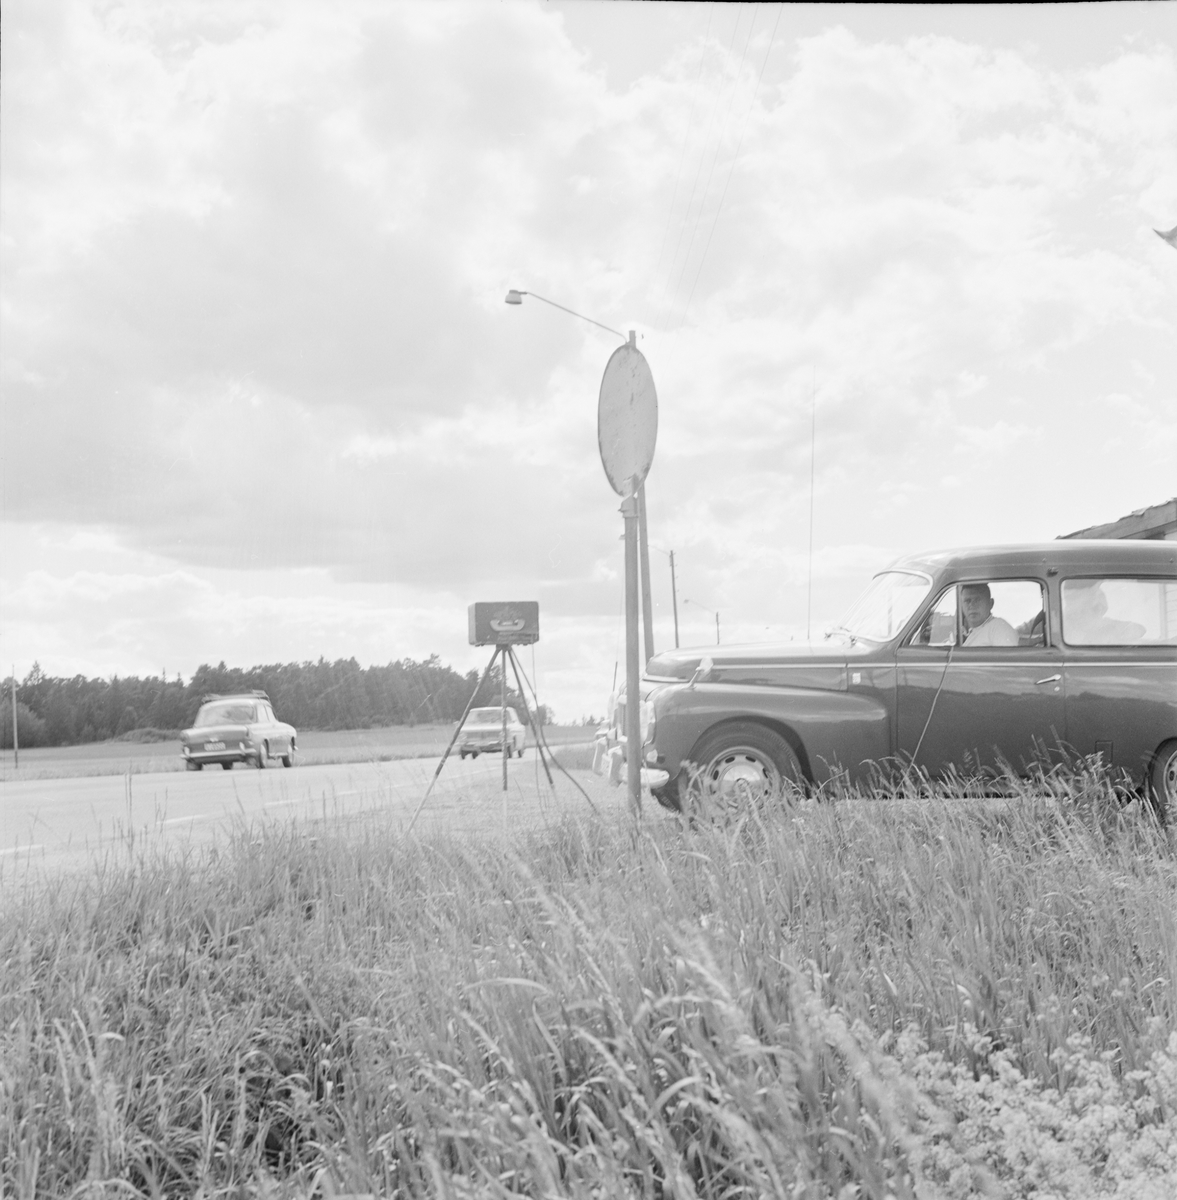 Polis - "hundra fartsyndare fast under tvådagarskontroll", Uppsala 1966